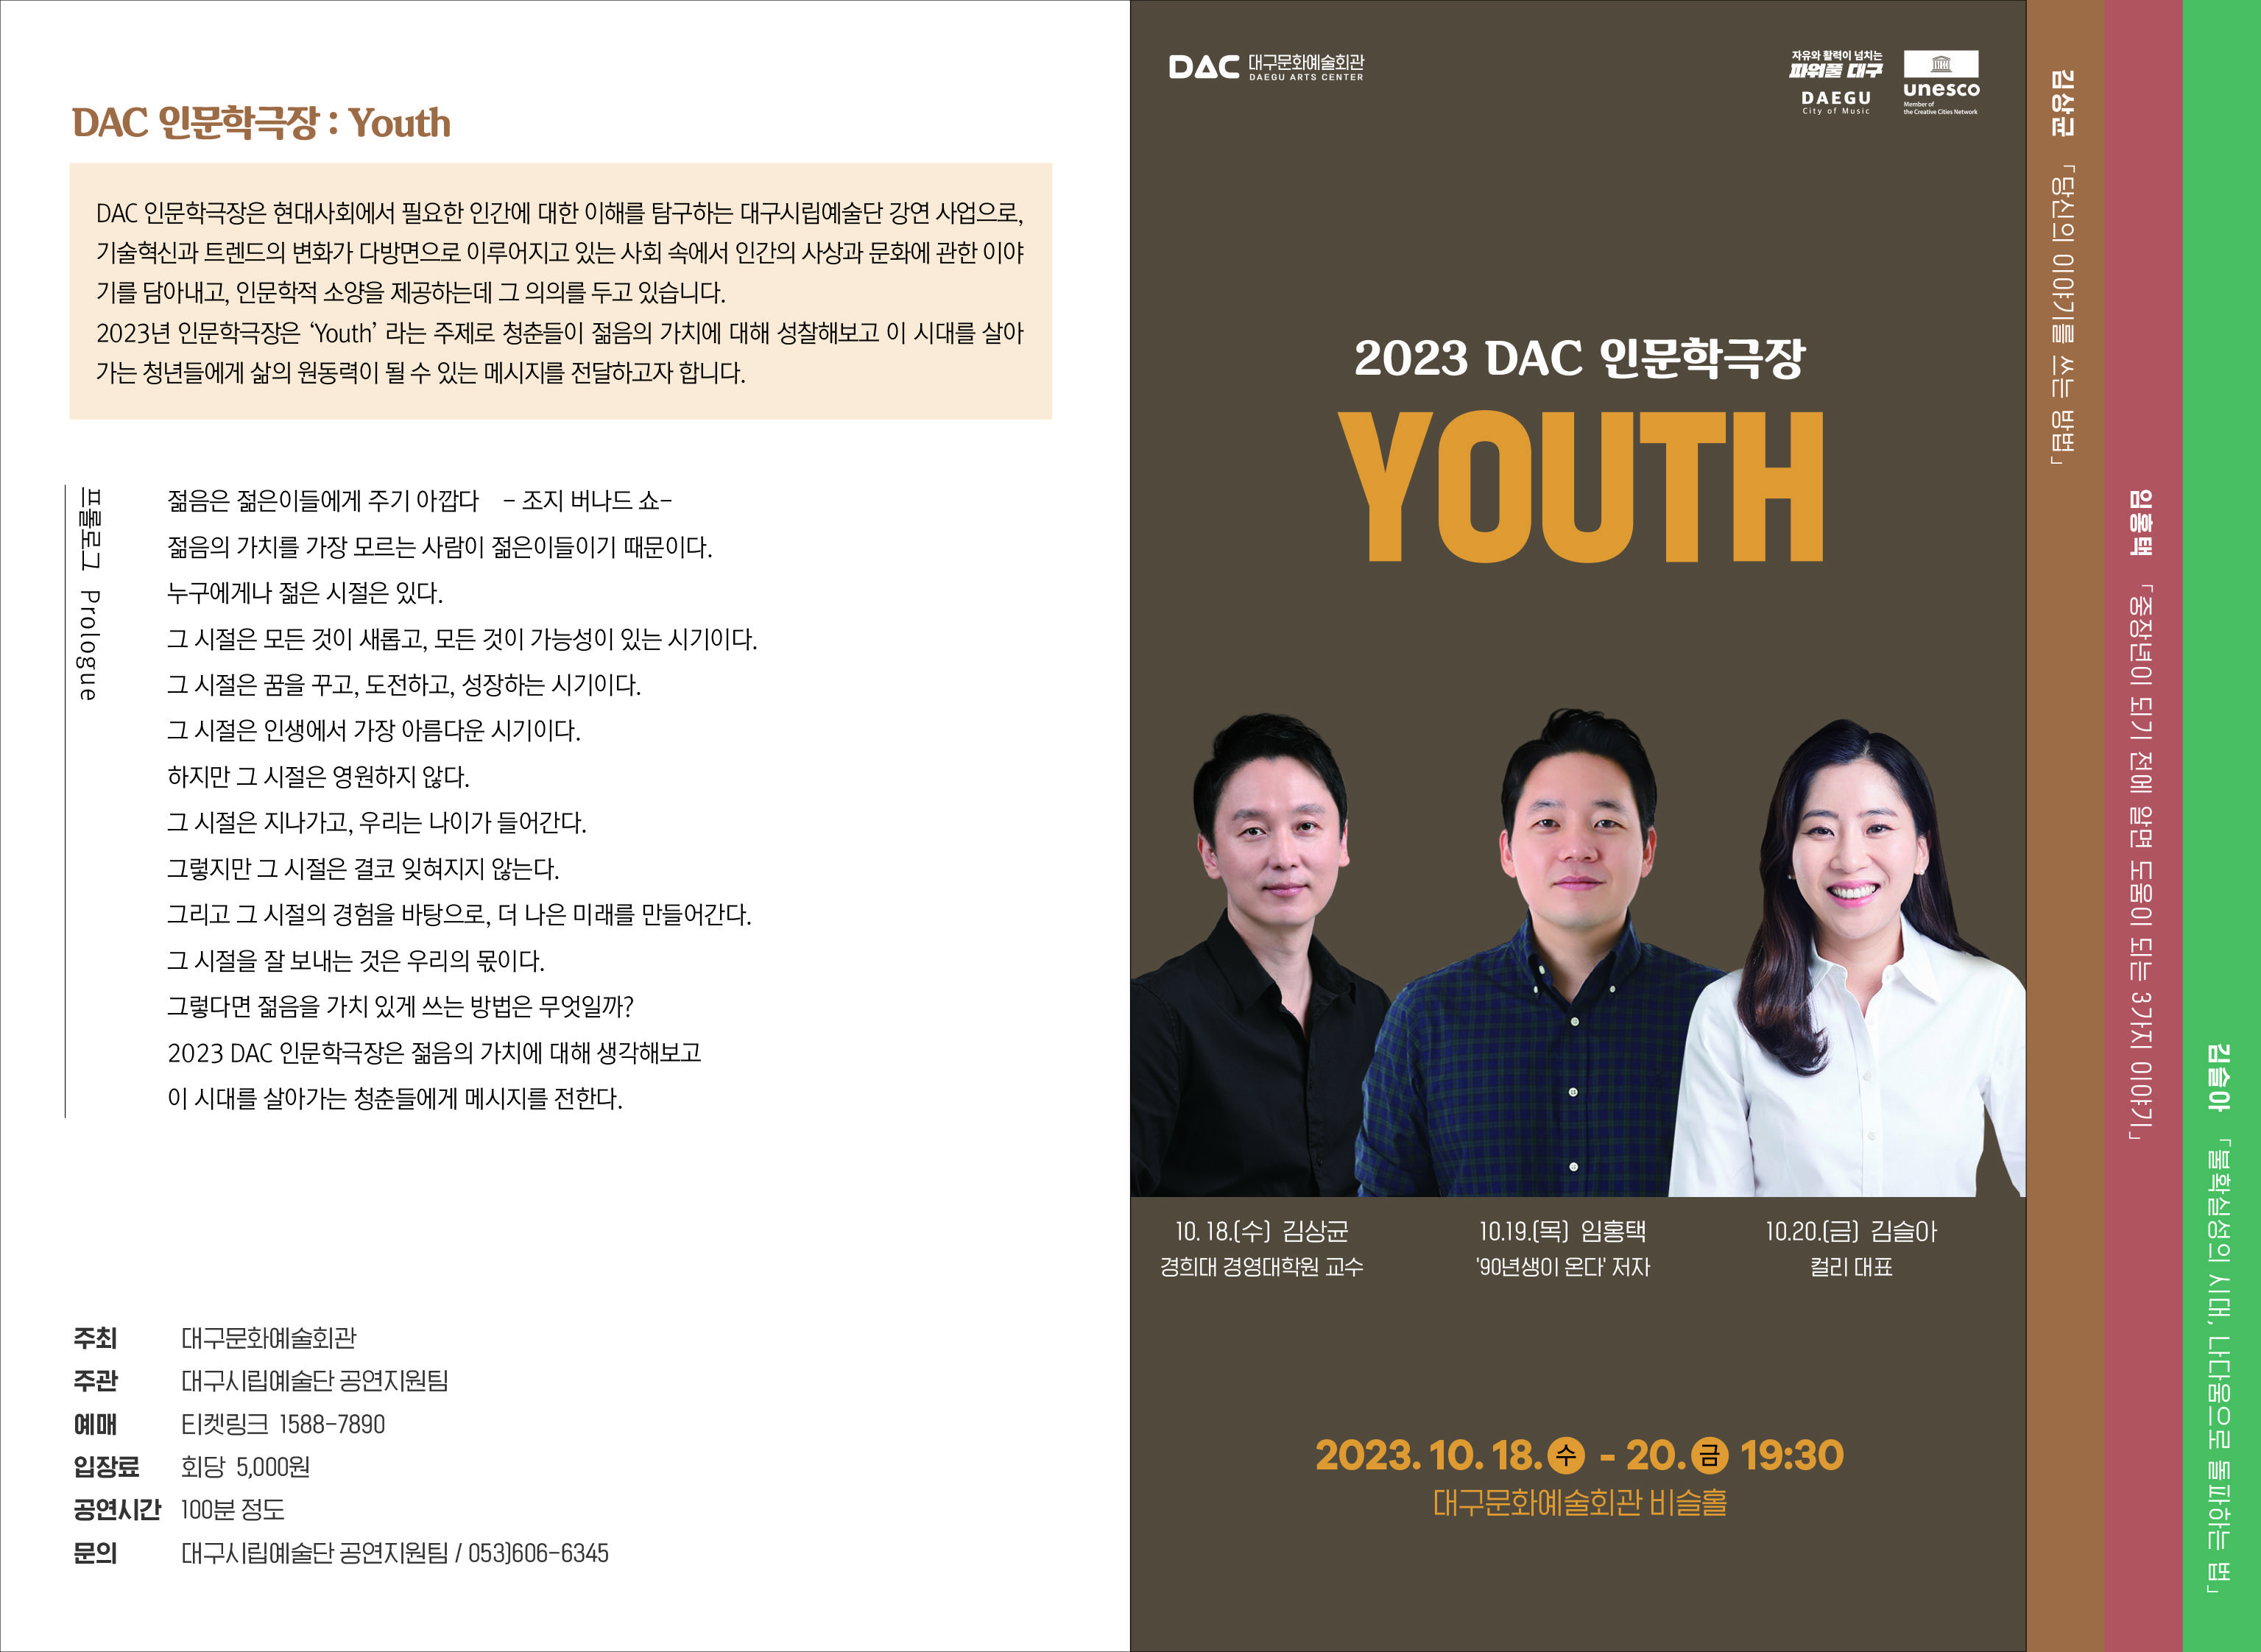 [대구문화예술회관] 2023 DAC 인문학극장 2